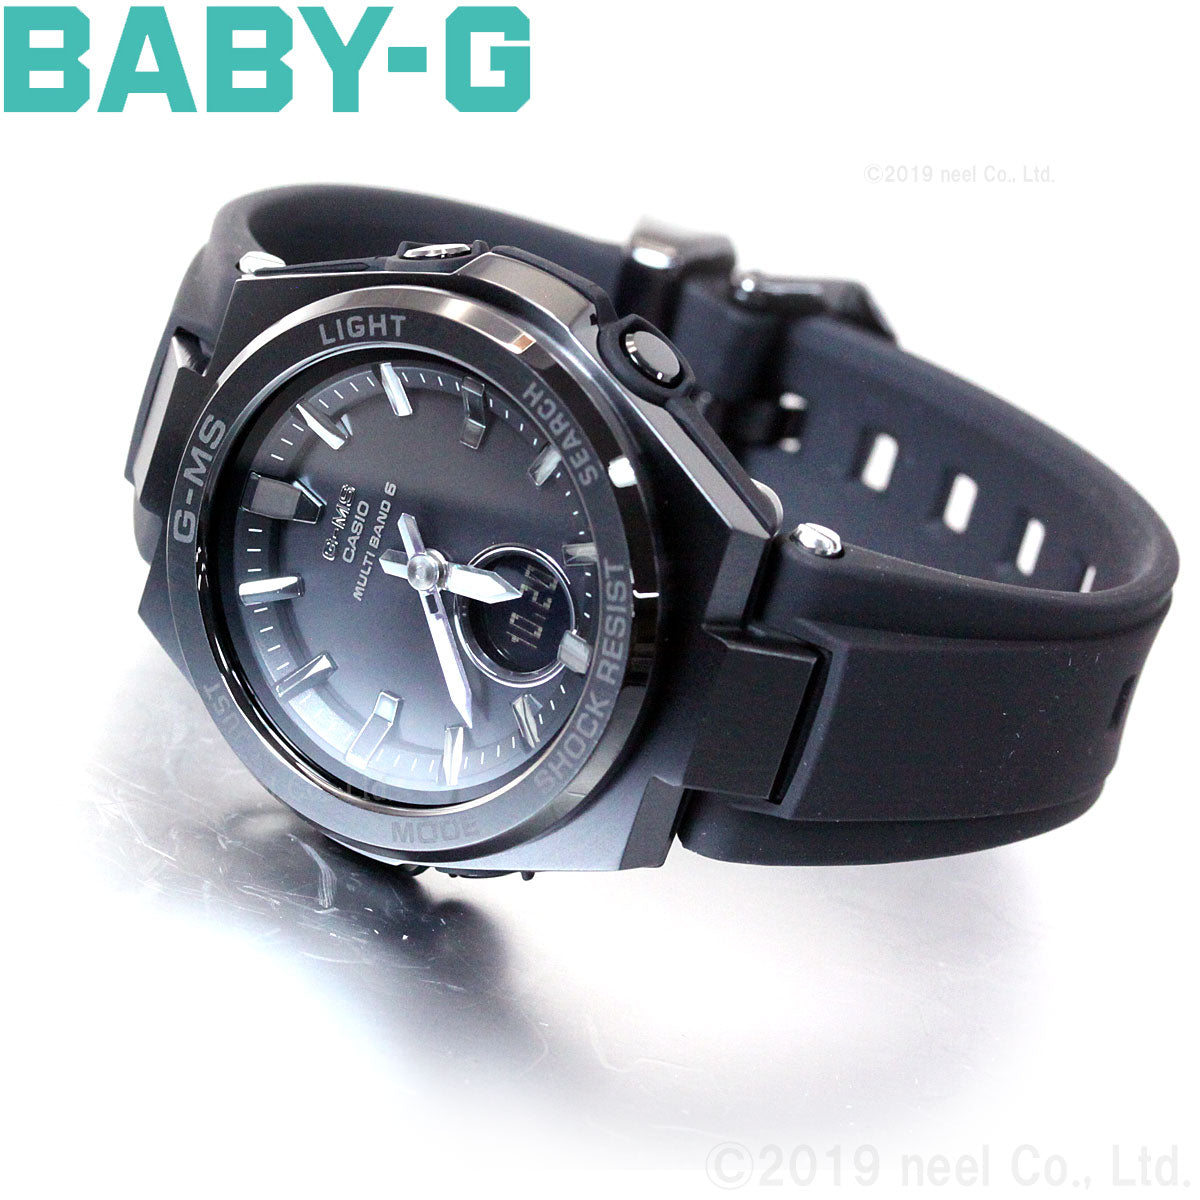 BABY-G カシオ ベビーG レディース G-MS 電波 ソーラー 腕時計 タフ